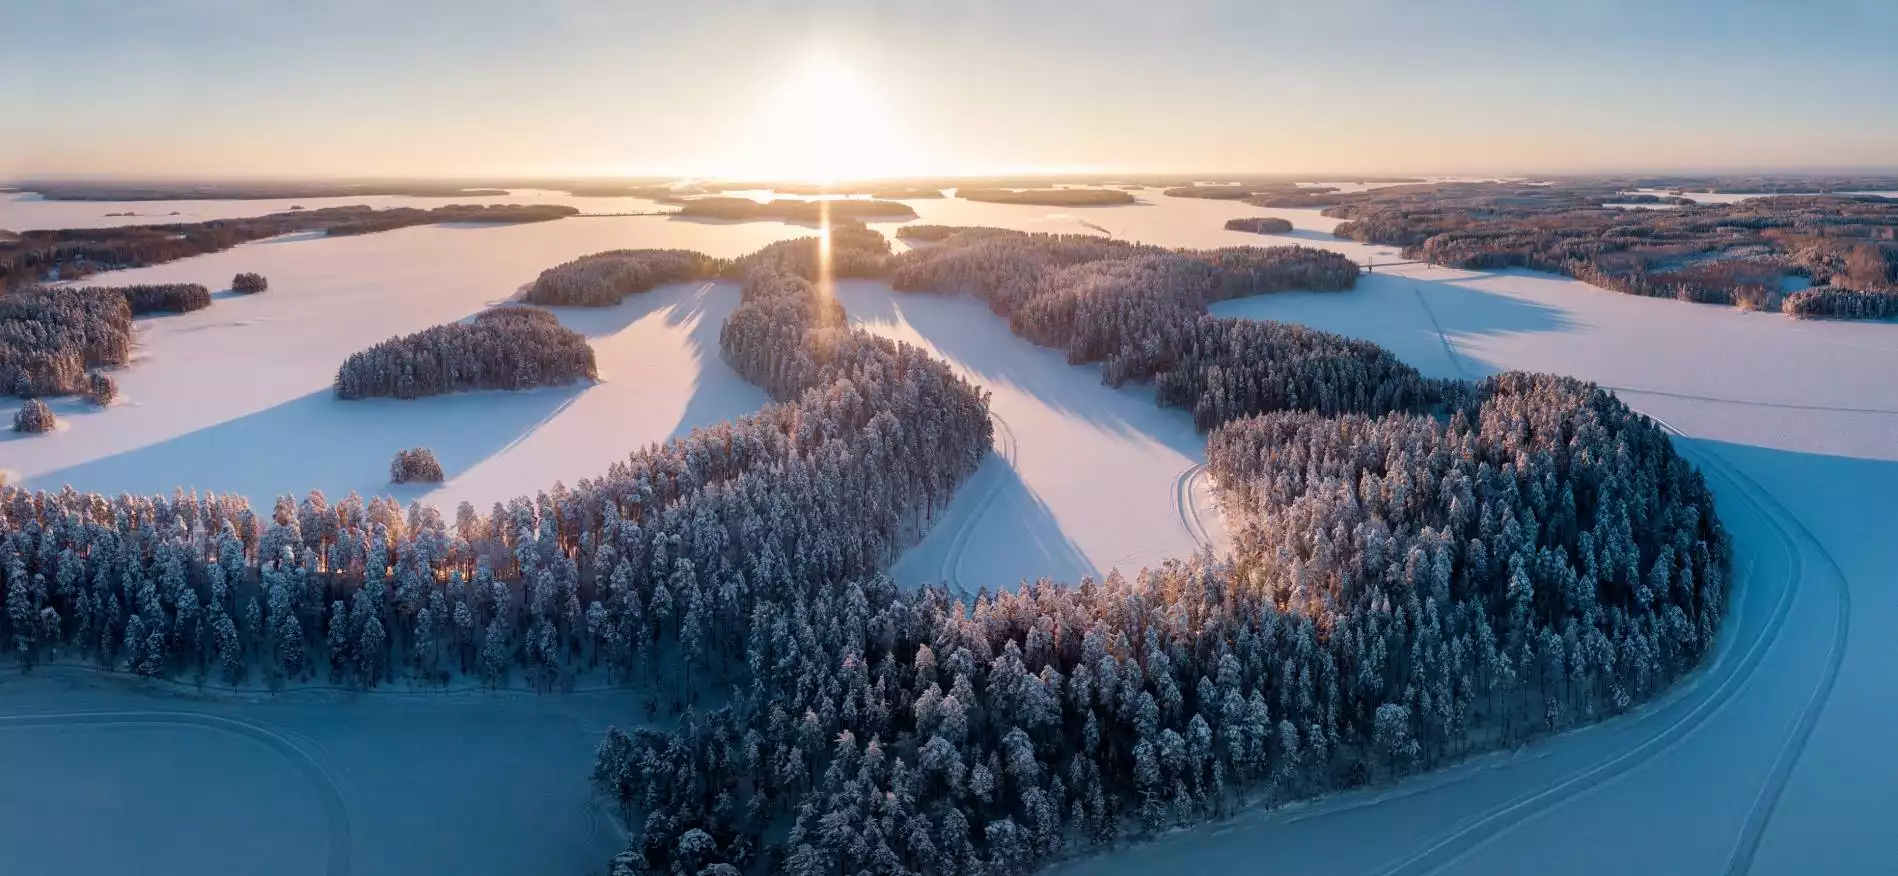 Finland winterreizen